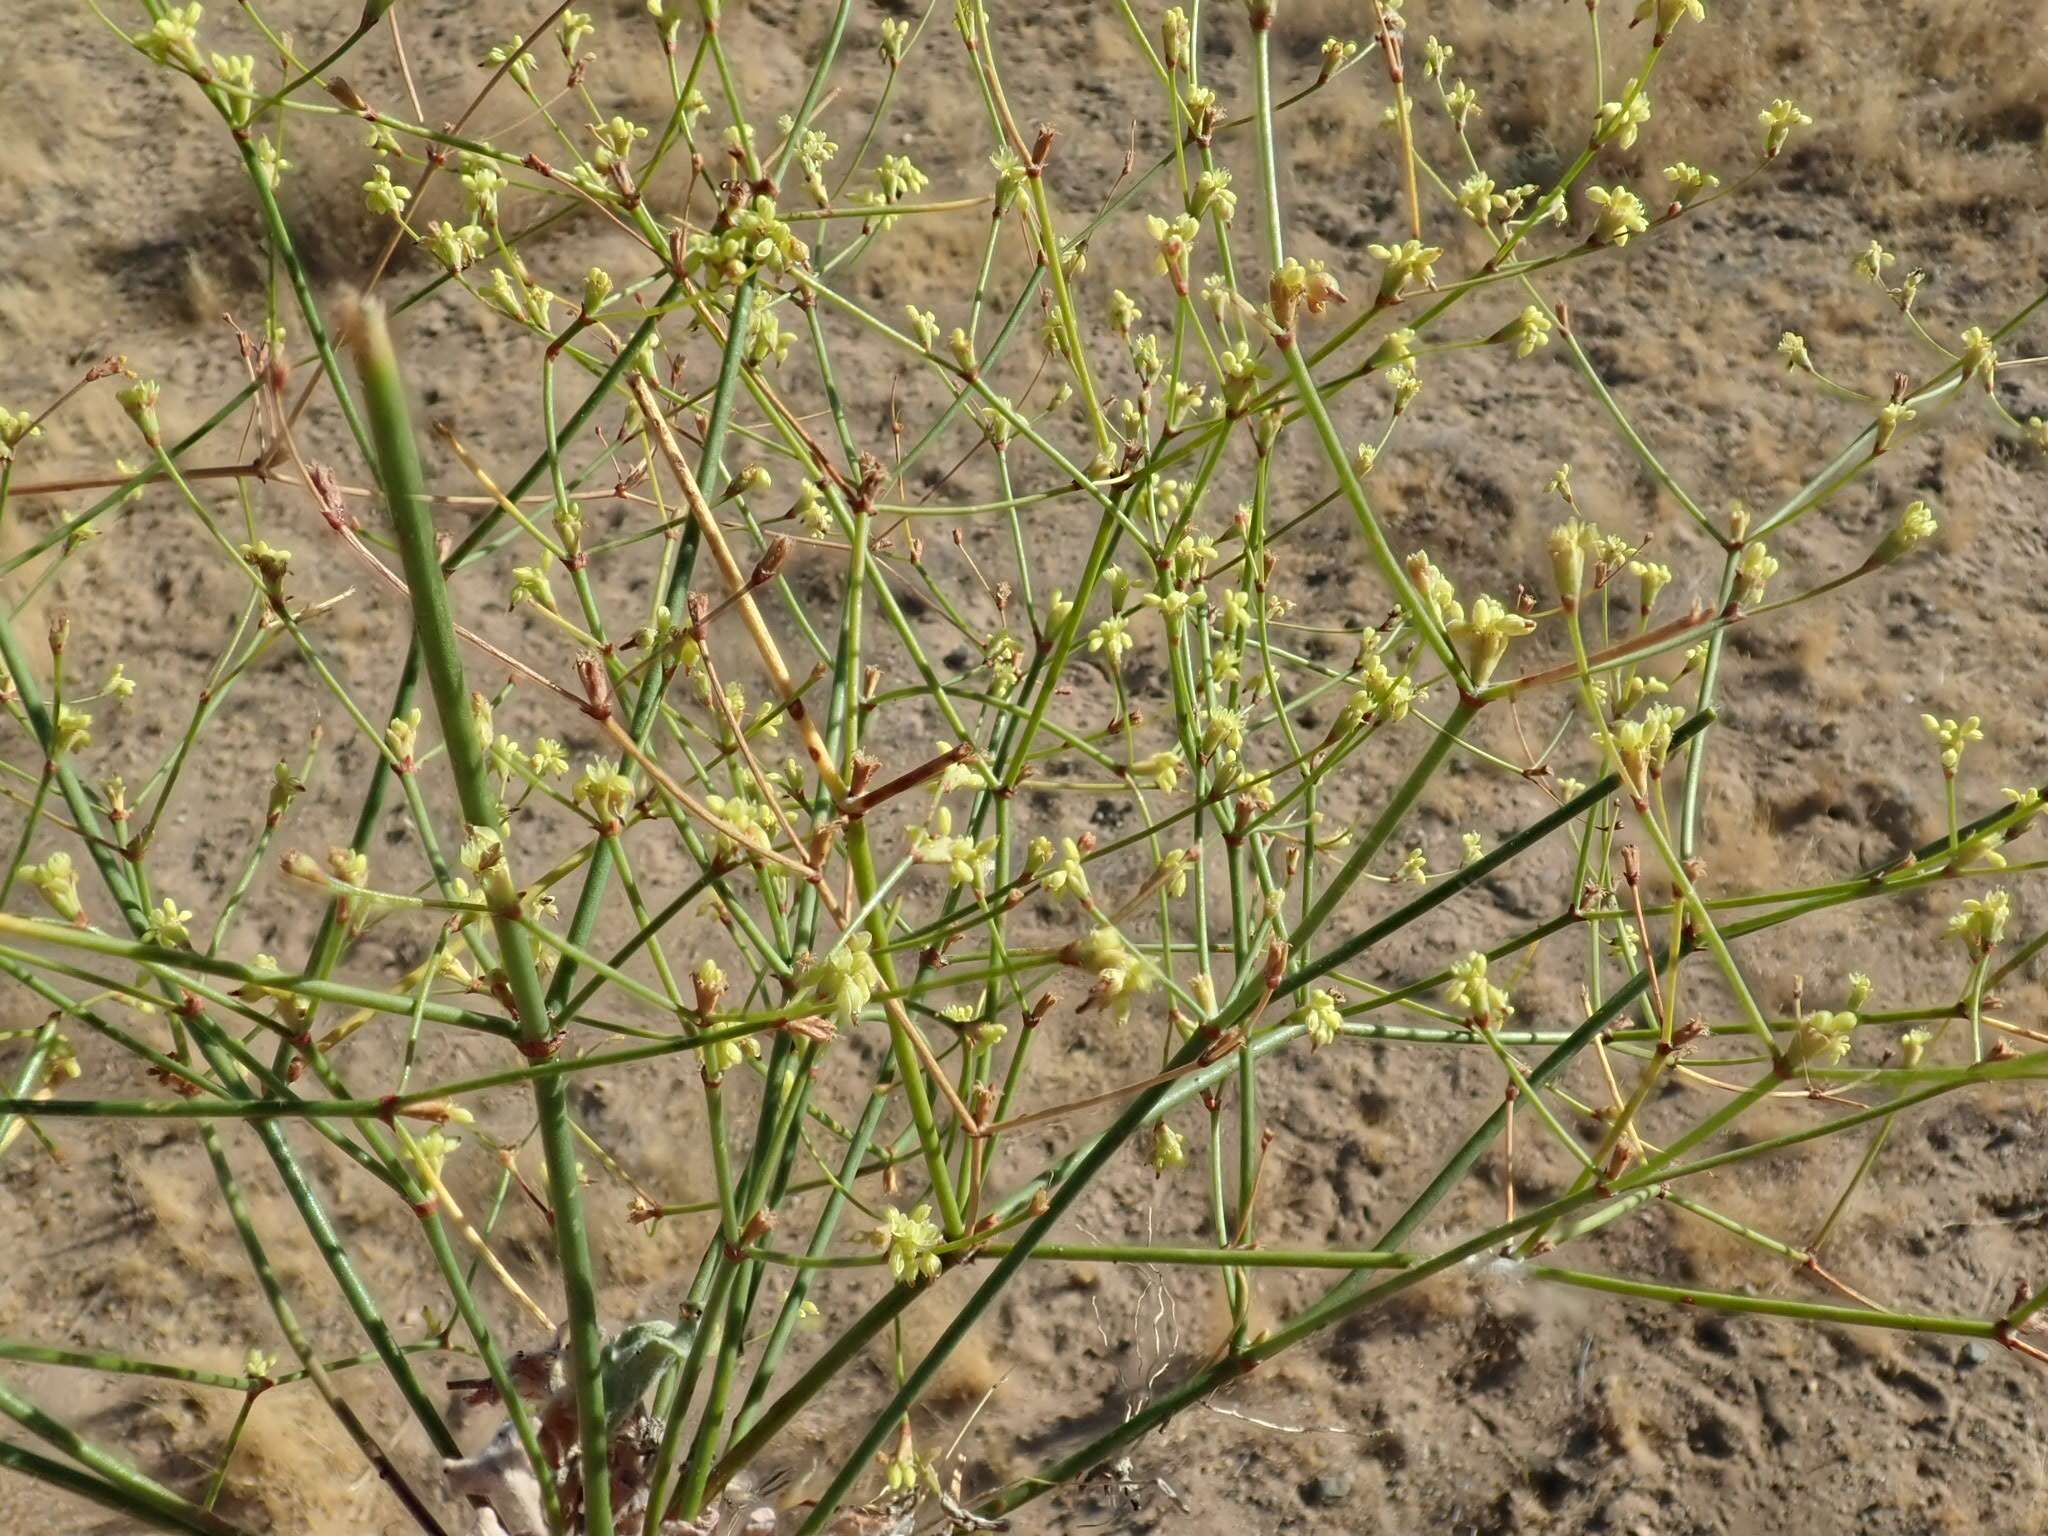 Image of Western Mojave buckwheat